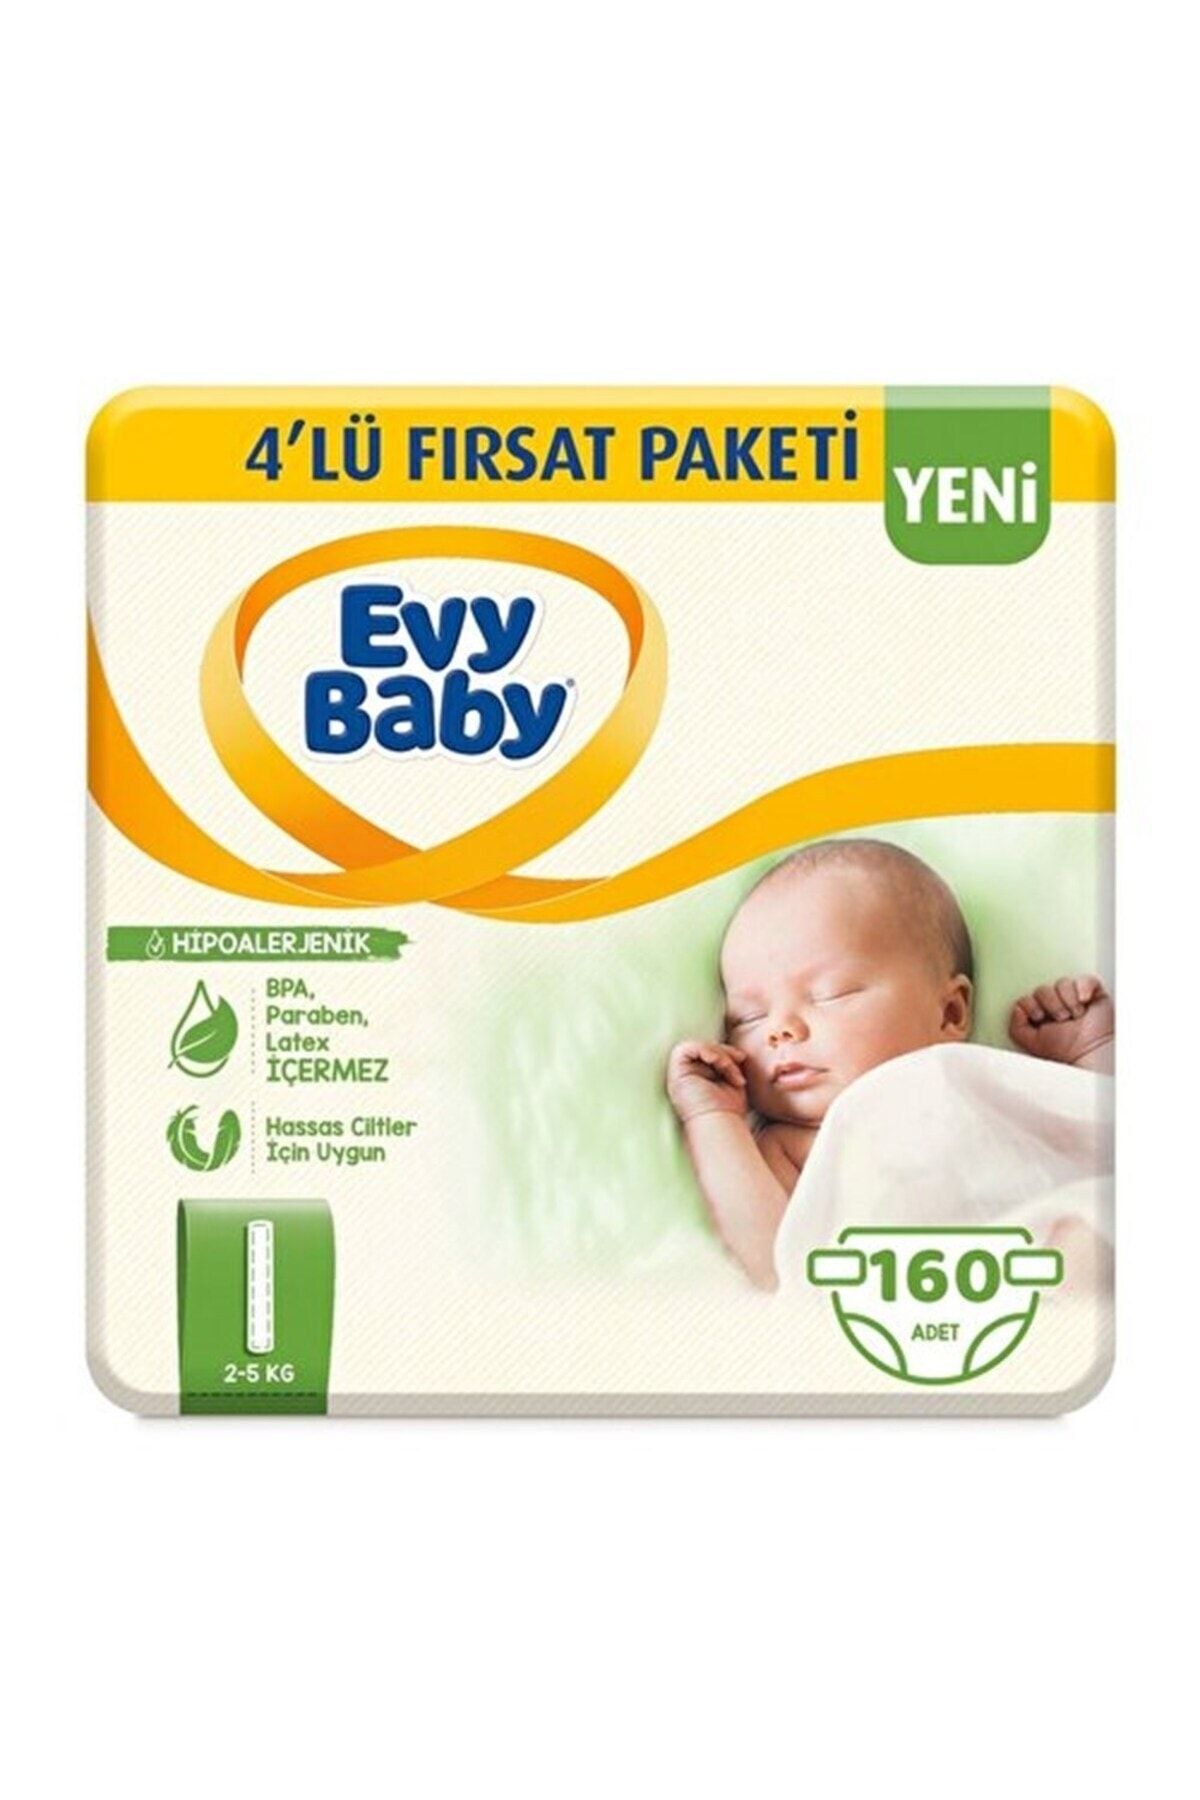 Evy Baby Bebek Bezi 1 Beden Yenidoğan 4'lü Fırsat Paketi 160 Adet (YENİ)